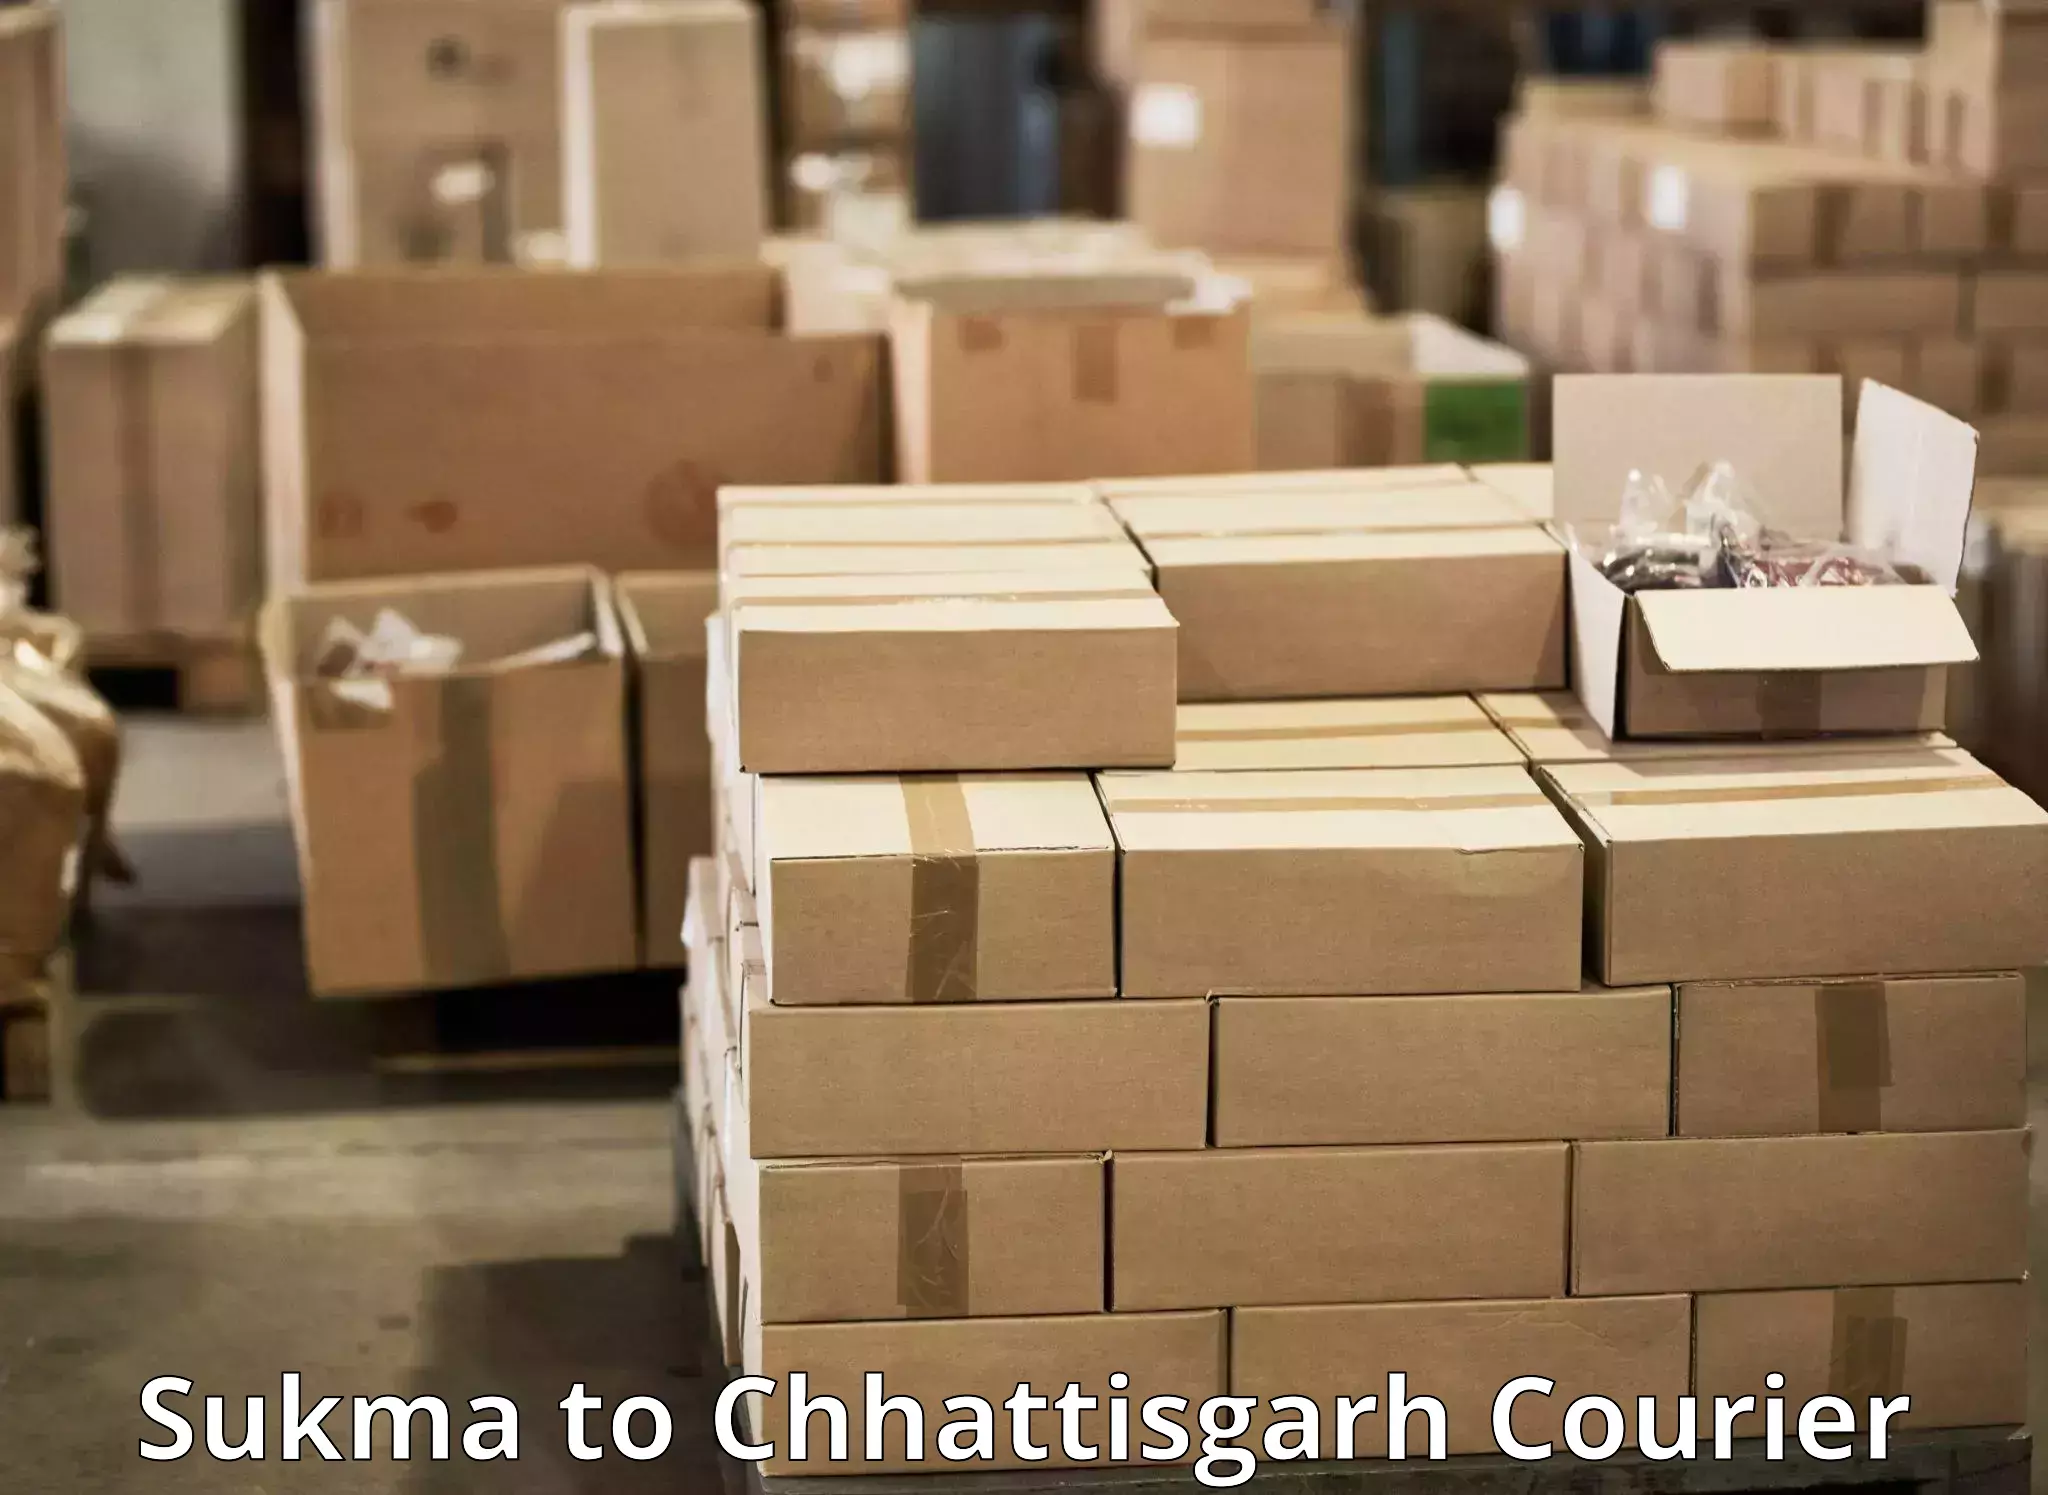 Reliable logistics providers Sukma to Korea Chhattisgarh